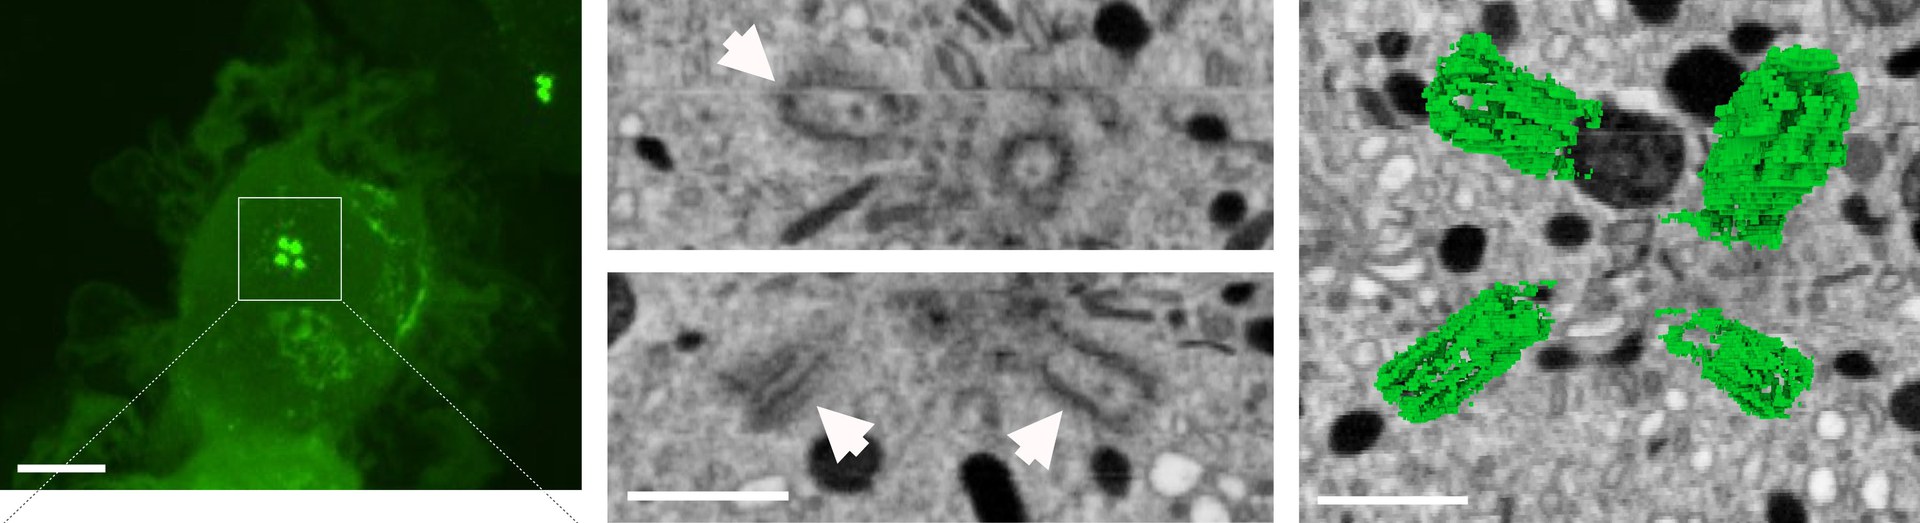 Das Bild zeigt eine dendritische Zelle, in der sich nach Kontakt zu einem Antigen zwei Zentrosomen mit vier sogenannten Zentriolen (grüne Punkte links; rechts daneben weiter vergrößert) gebildet haben.